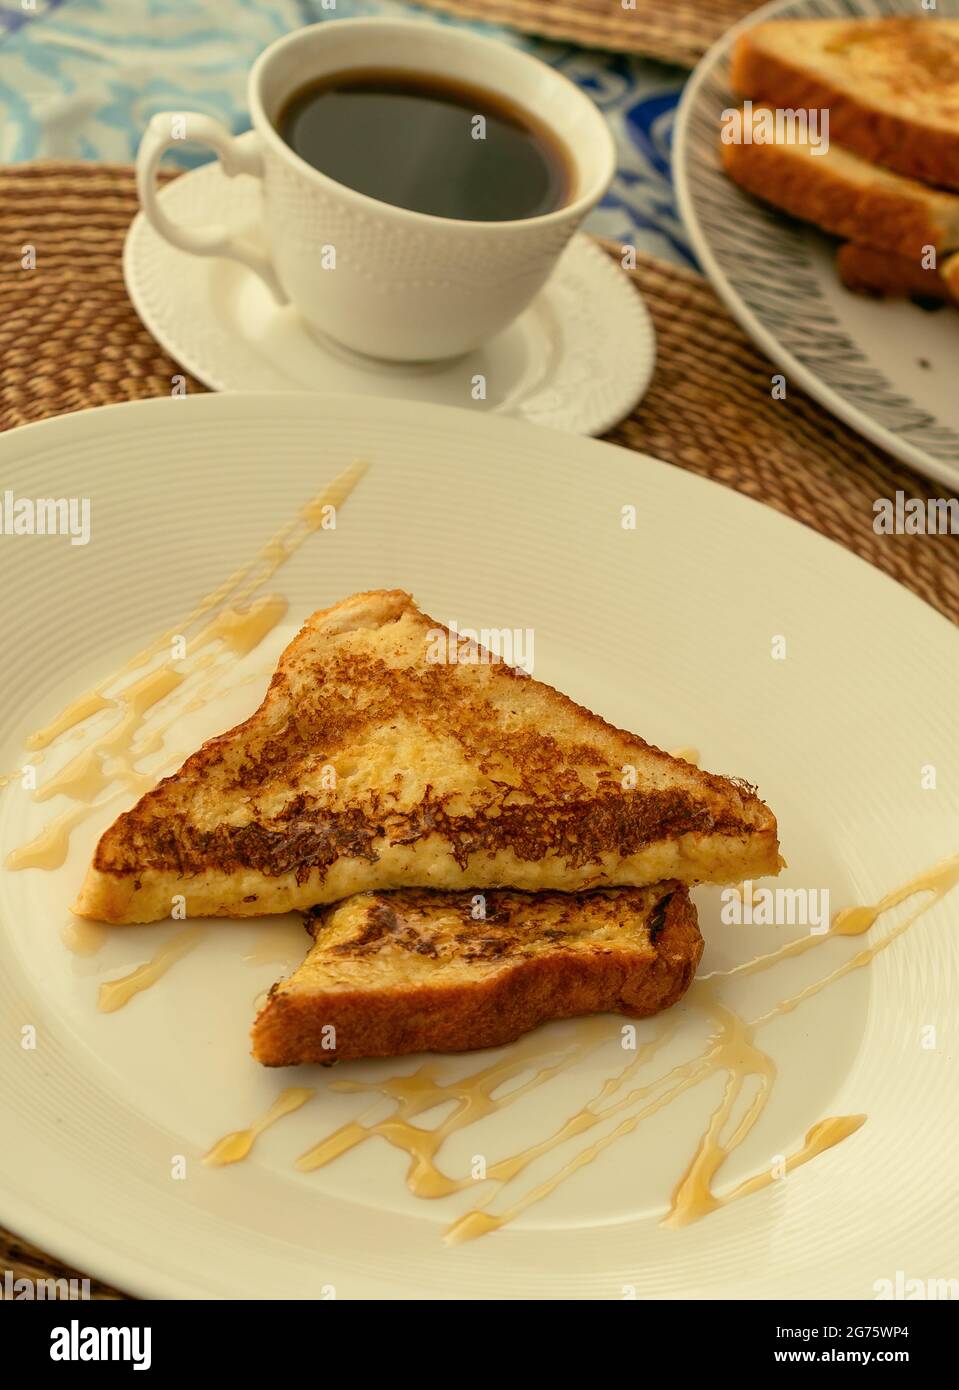 Due toast alla francese serviti con miele su un piatto bianco per colazione o brunch, sullo sfondo una tazza di caffè nero e una pila di toast alla francese. Foto Stock